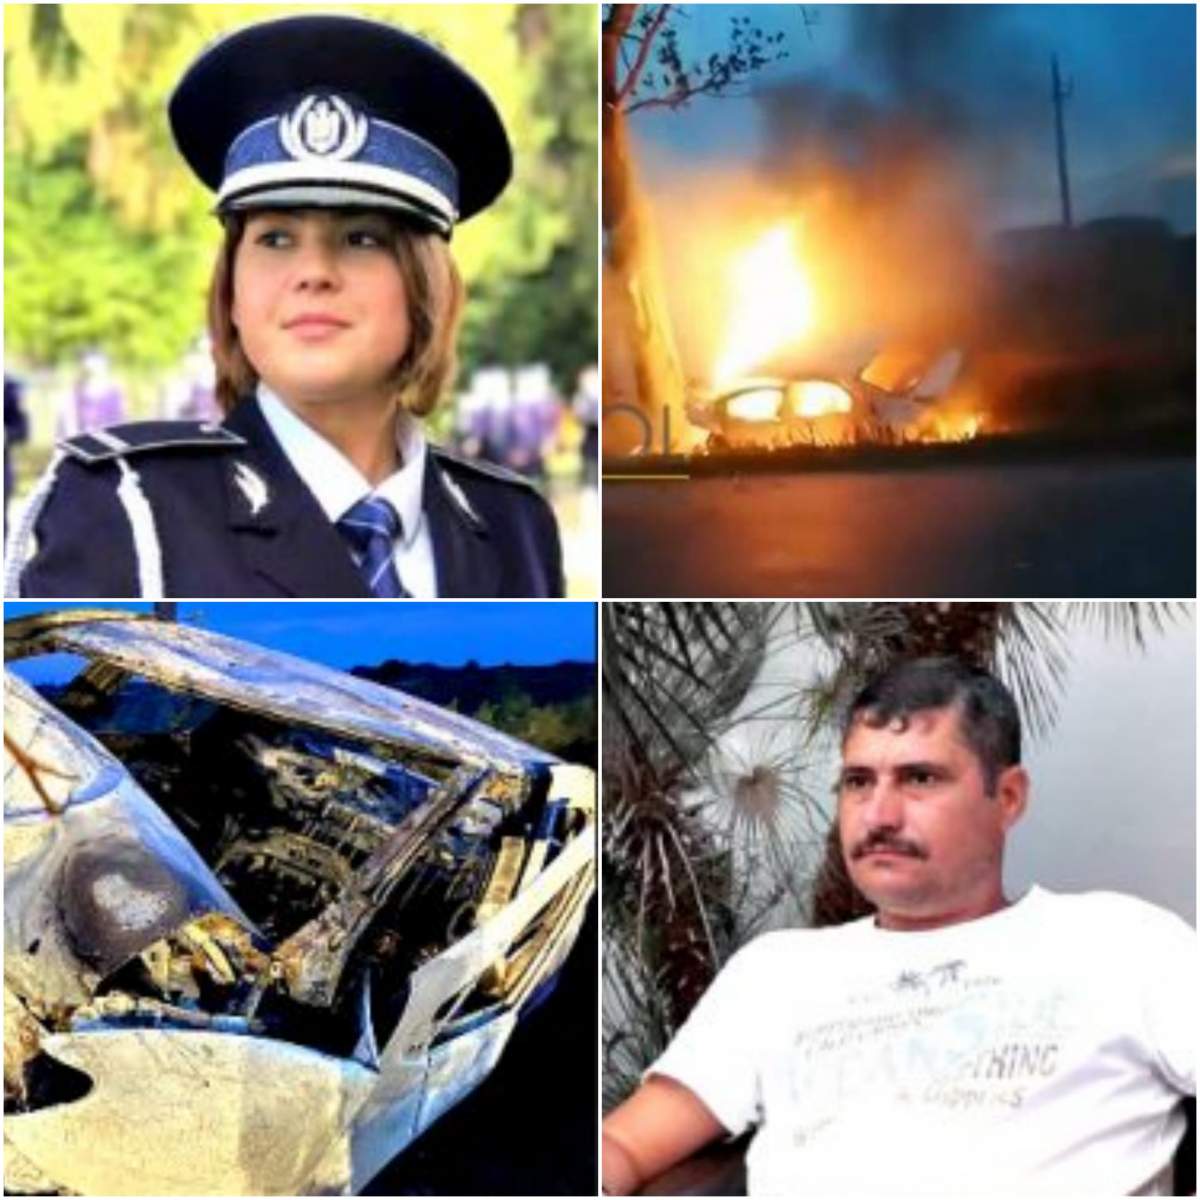 Ei sunt cei doi polițiști care au murit carbonizați în accidentul din Brăila: ”Transmitem sincere condoleanţe familiilor colegilor noştri”